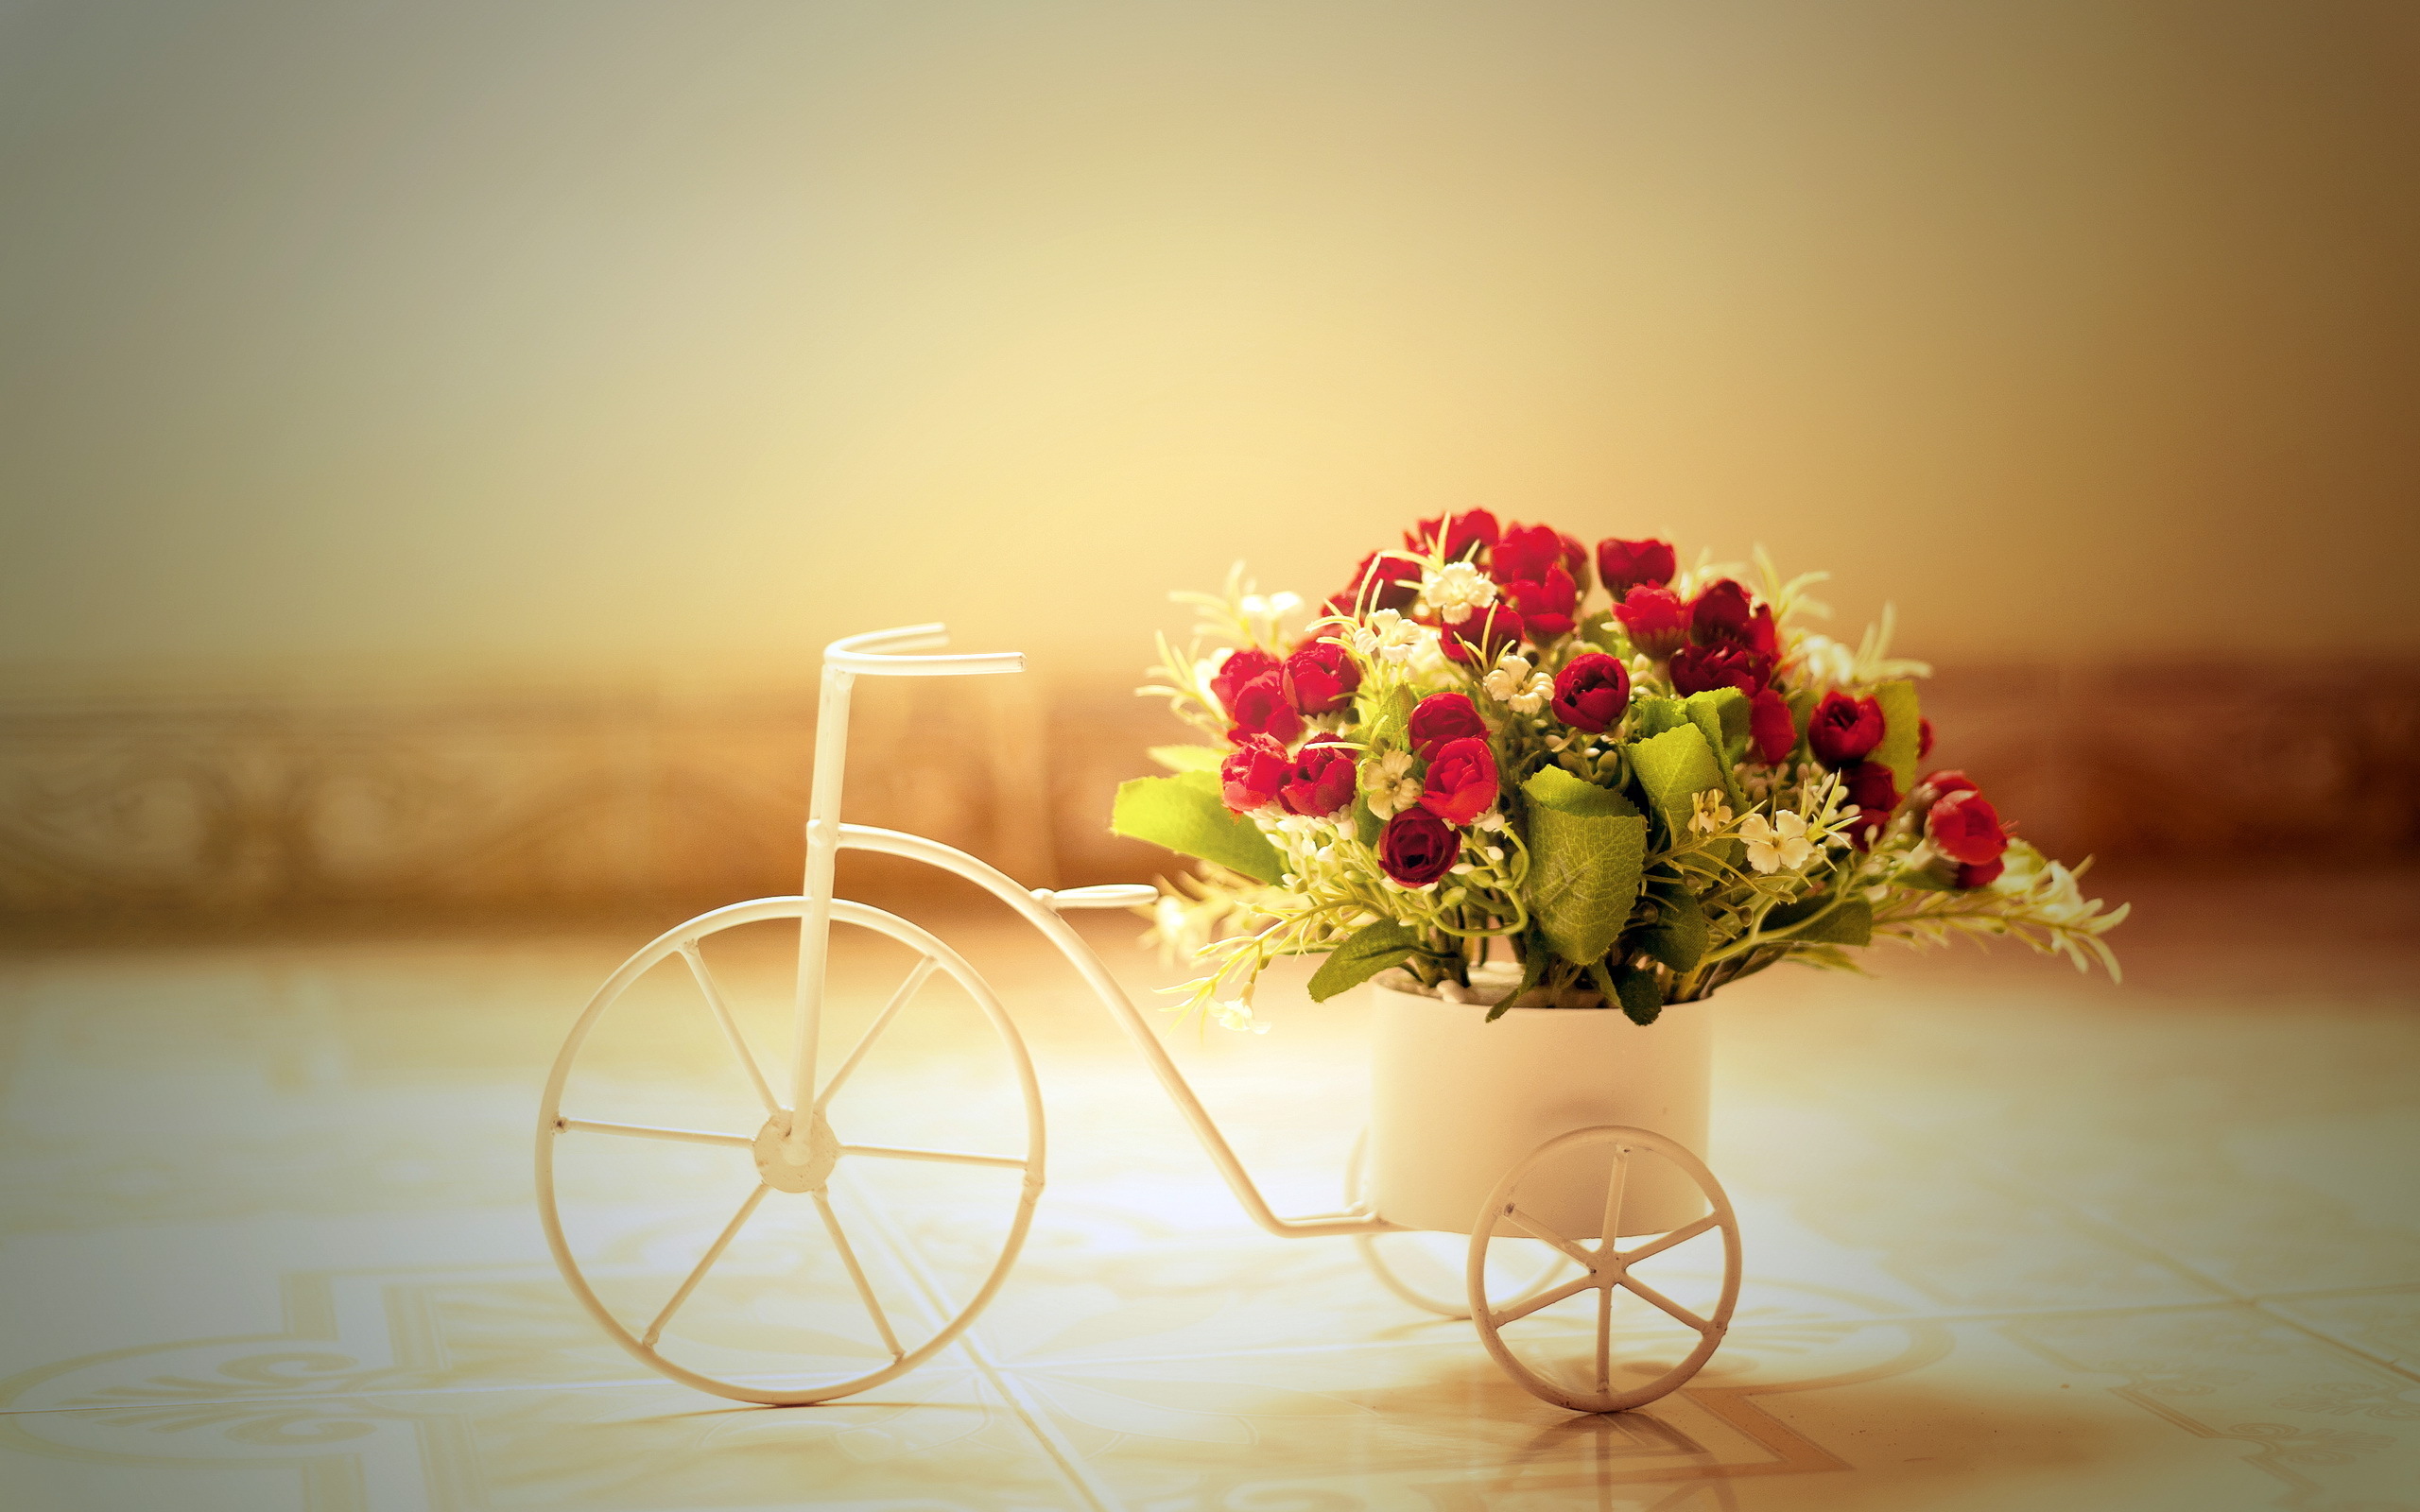 Скачать обои бесплатно Розы, Цветы, Букеты, Растения картинка на рабочий стол ПК